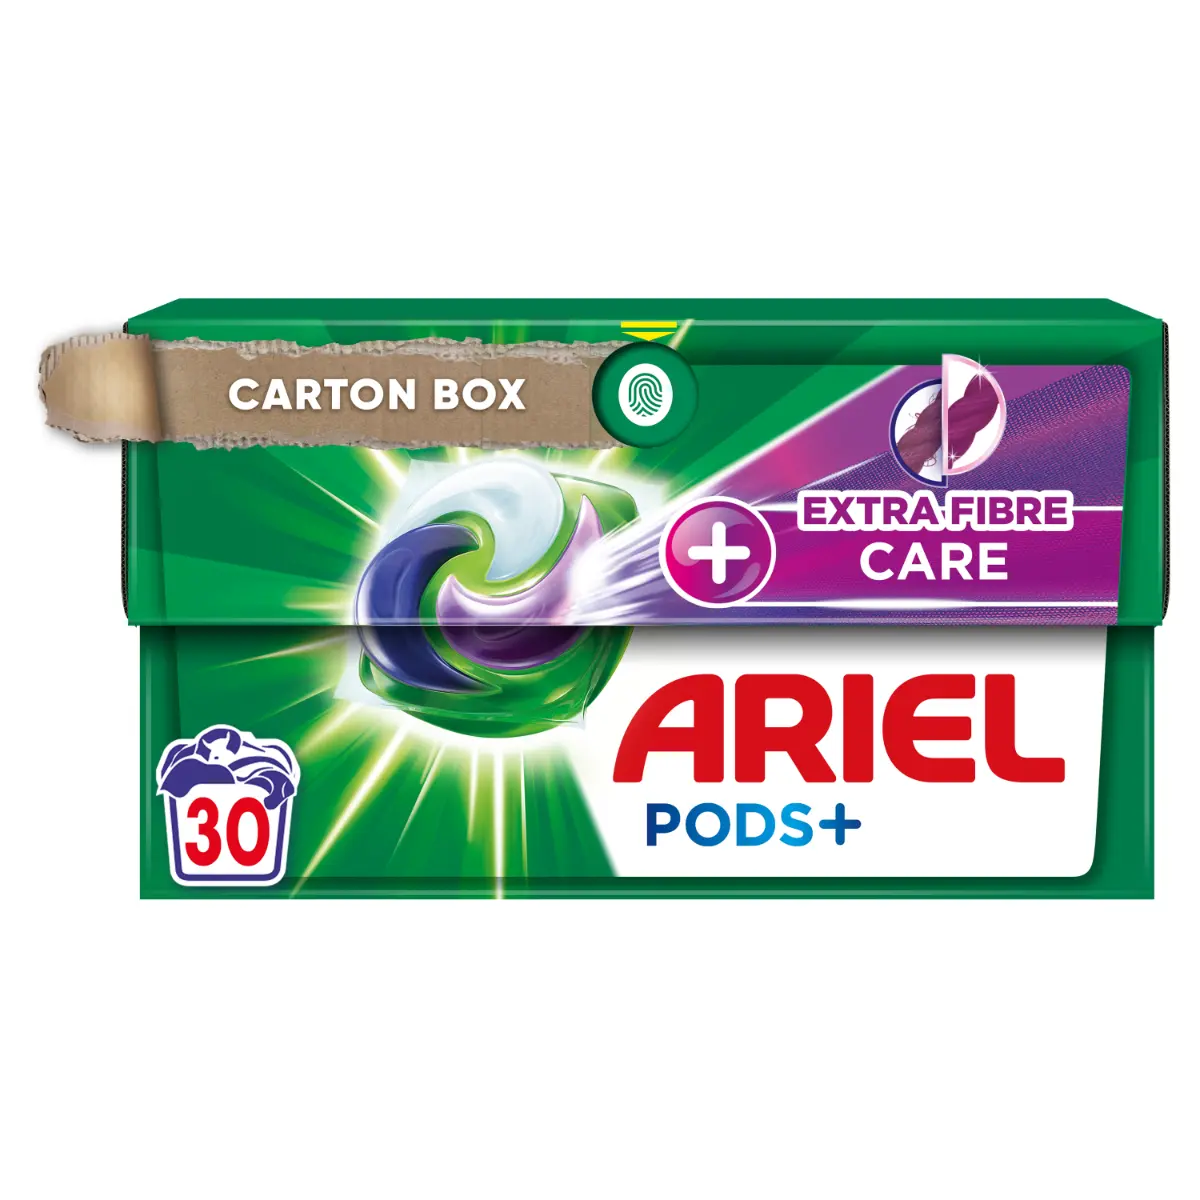 Detergent de rufe capsule Ariel PODS+ Extra Fiber Care, 30 spalari